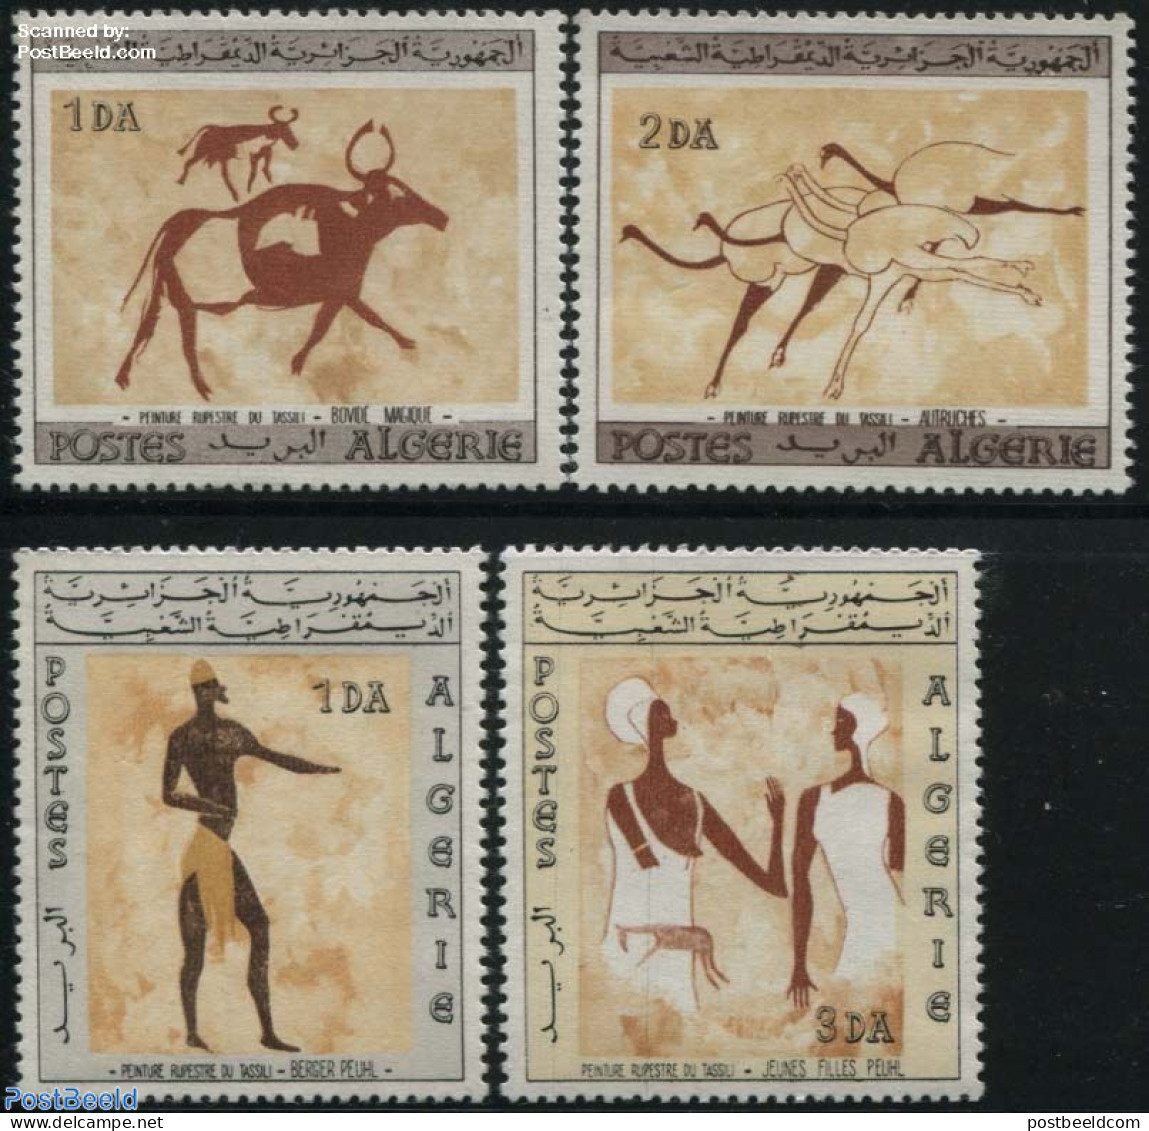 Algeria 1966 Tassili Rock Paintings 4v, Unused (hinged), Art - Cave Paintings - Unused Stamps